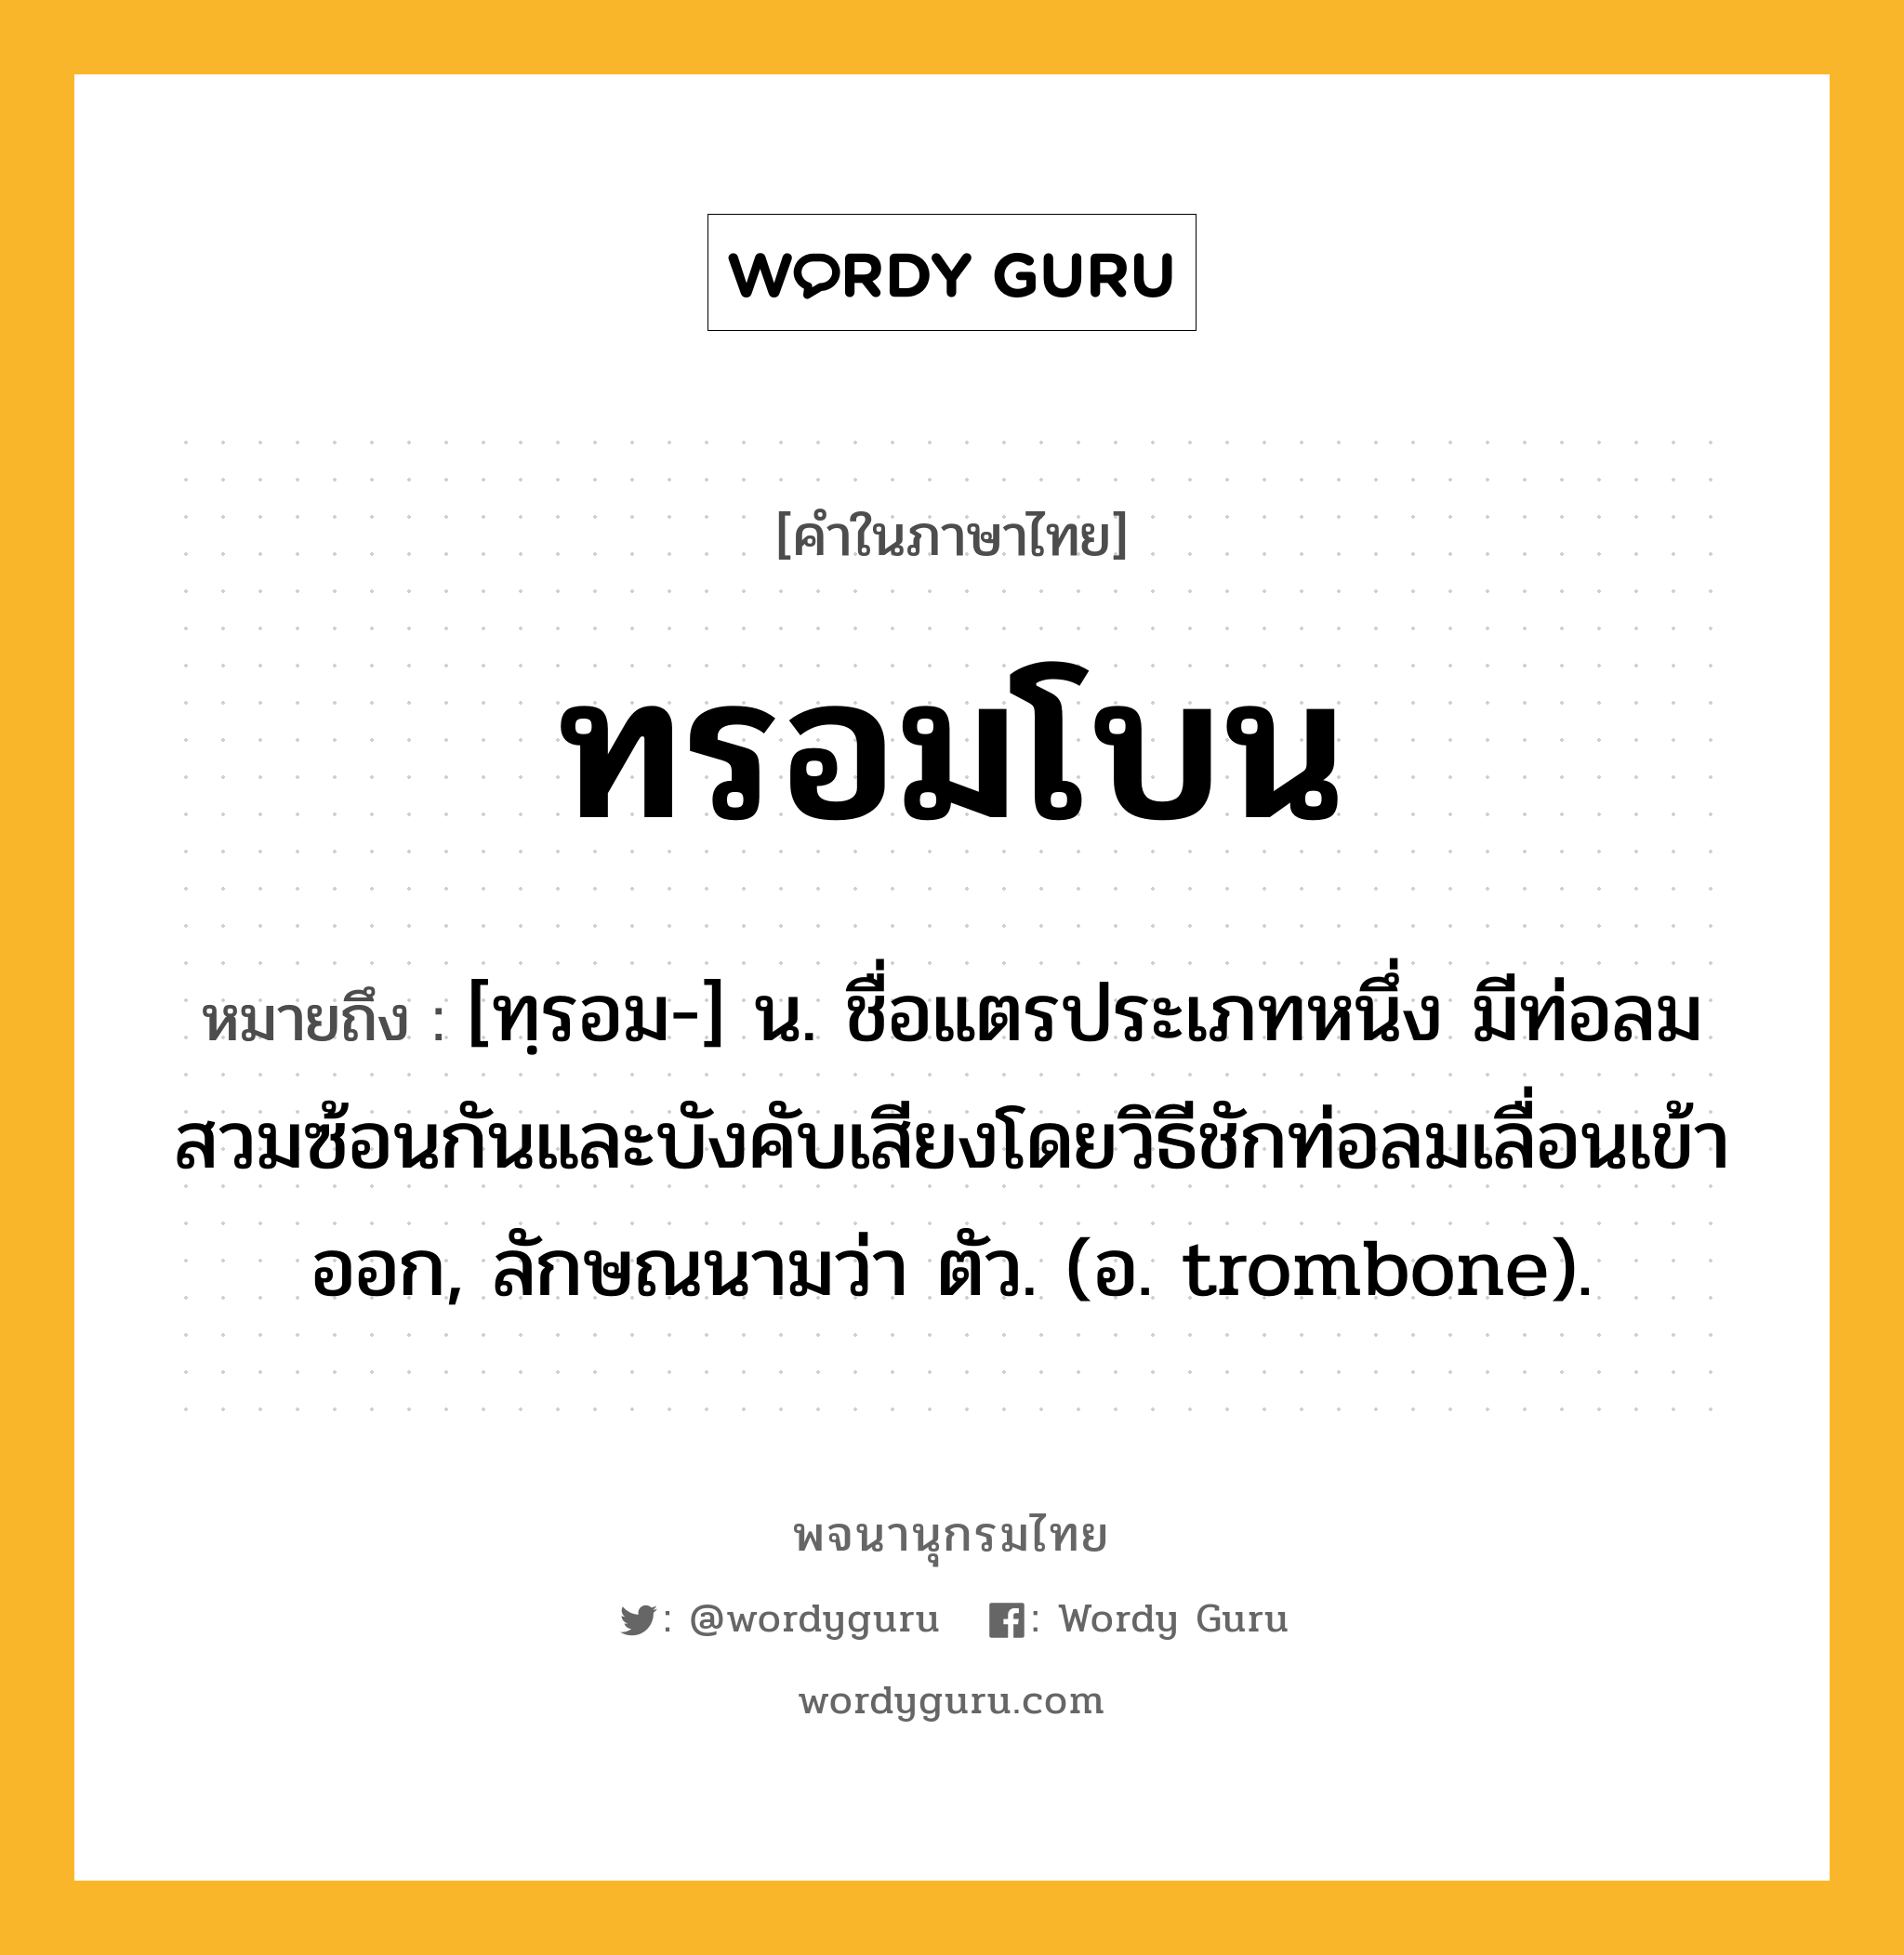 ทรอมโบน หมายถึงอะไร?, คำในภาษาไทย ทรอมโบน หมายถึง [ทฺรอม-] น. ชื่อแตรประเภทหนึ่ง มีท่อลมสวมซ้อนกันและบังคับเสียงโดยวิธีชักท่อลมเลื่อนเข้าออก, ลักษณนามว่า ตัว. (อ. trombone).